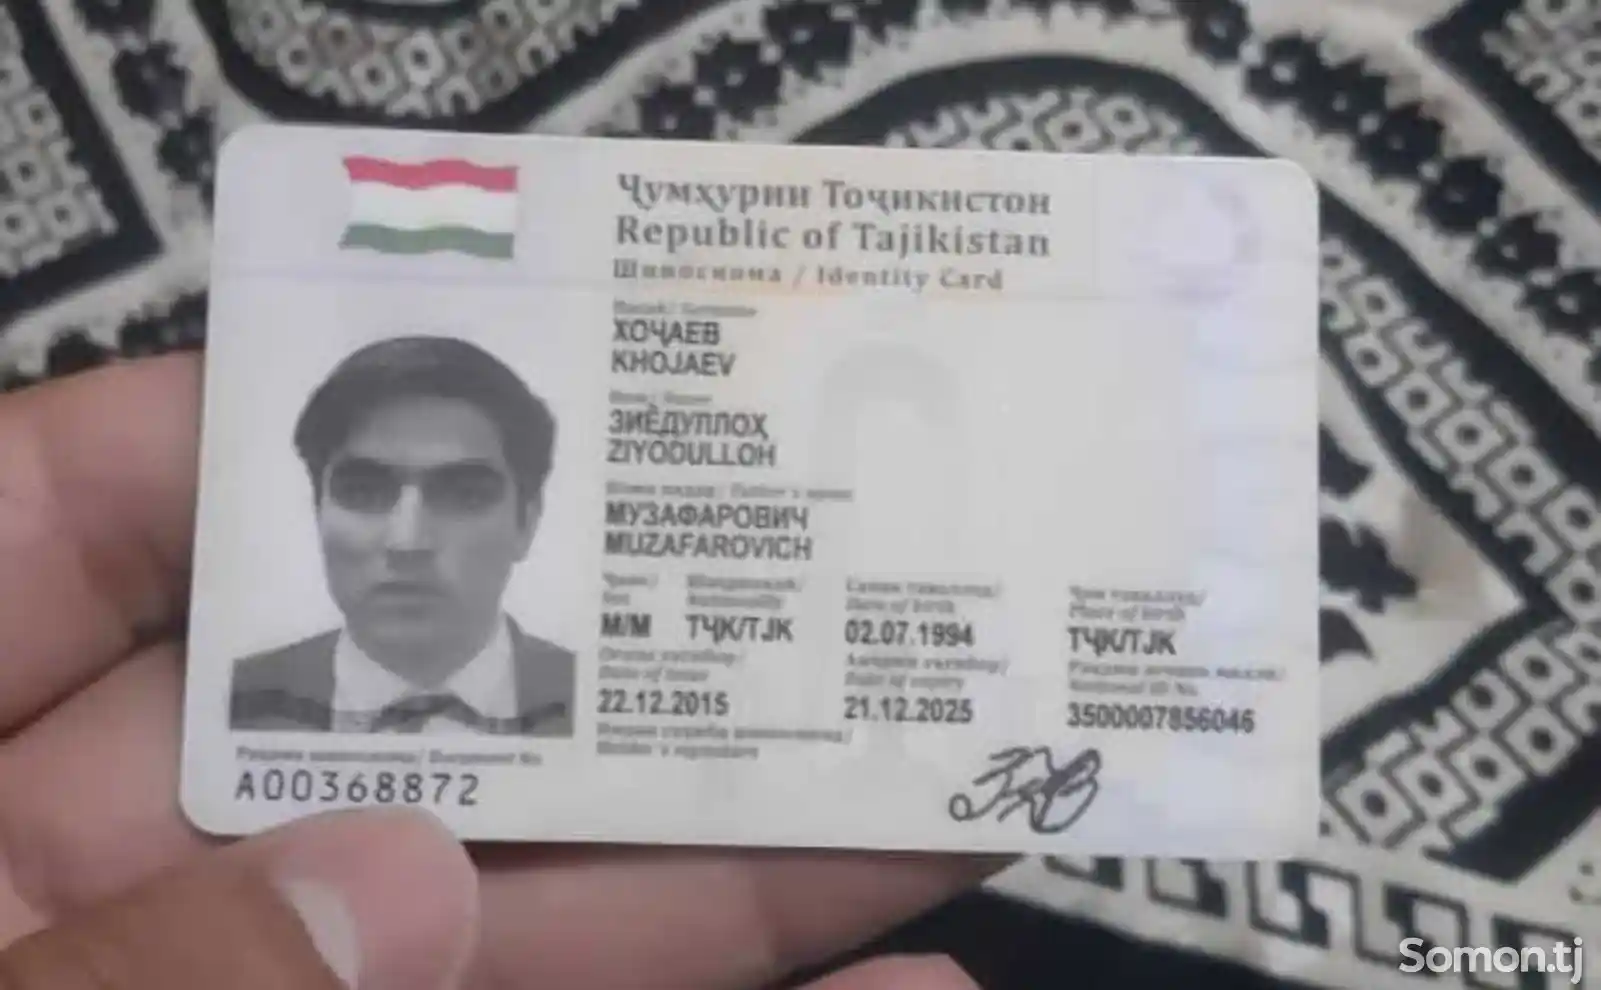 Потерялся паспорт на имя Хочаев Зиедуллох-1